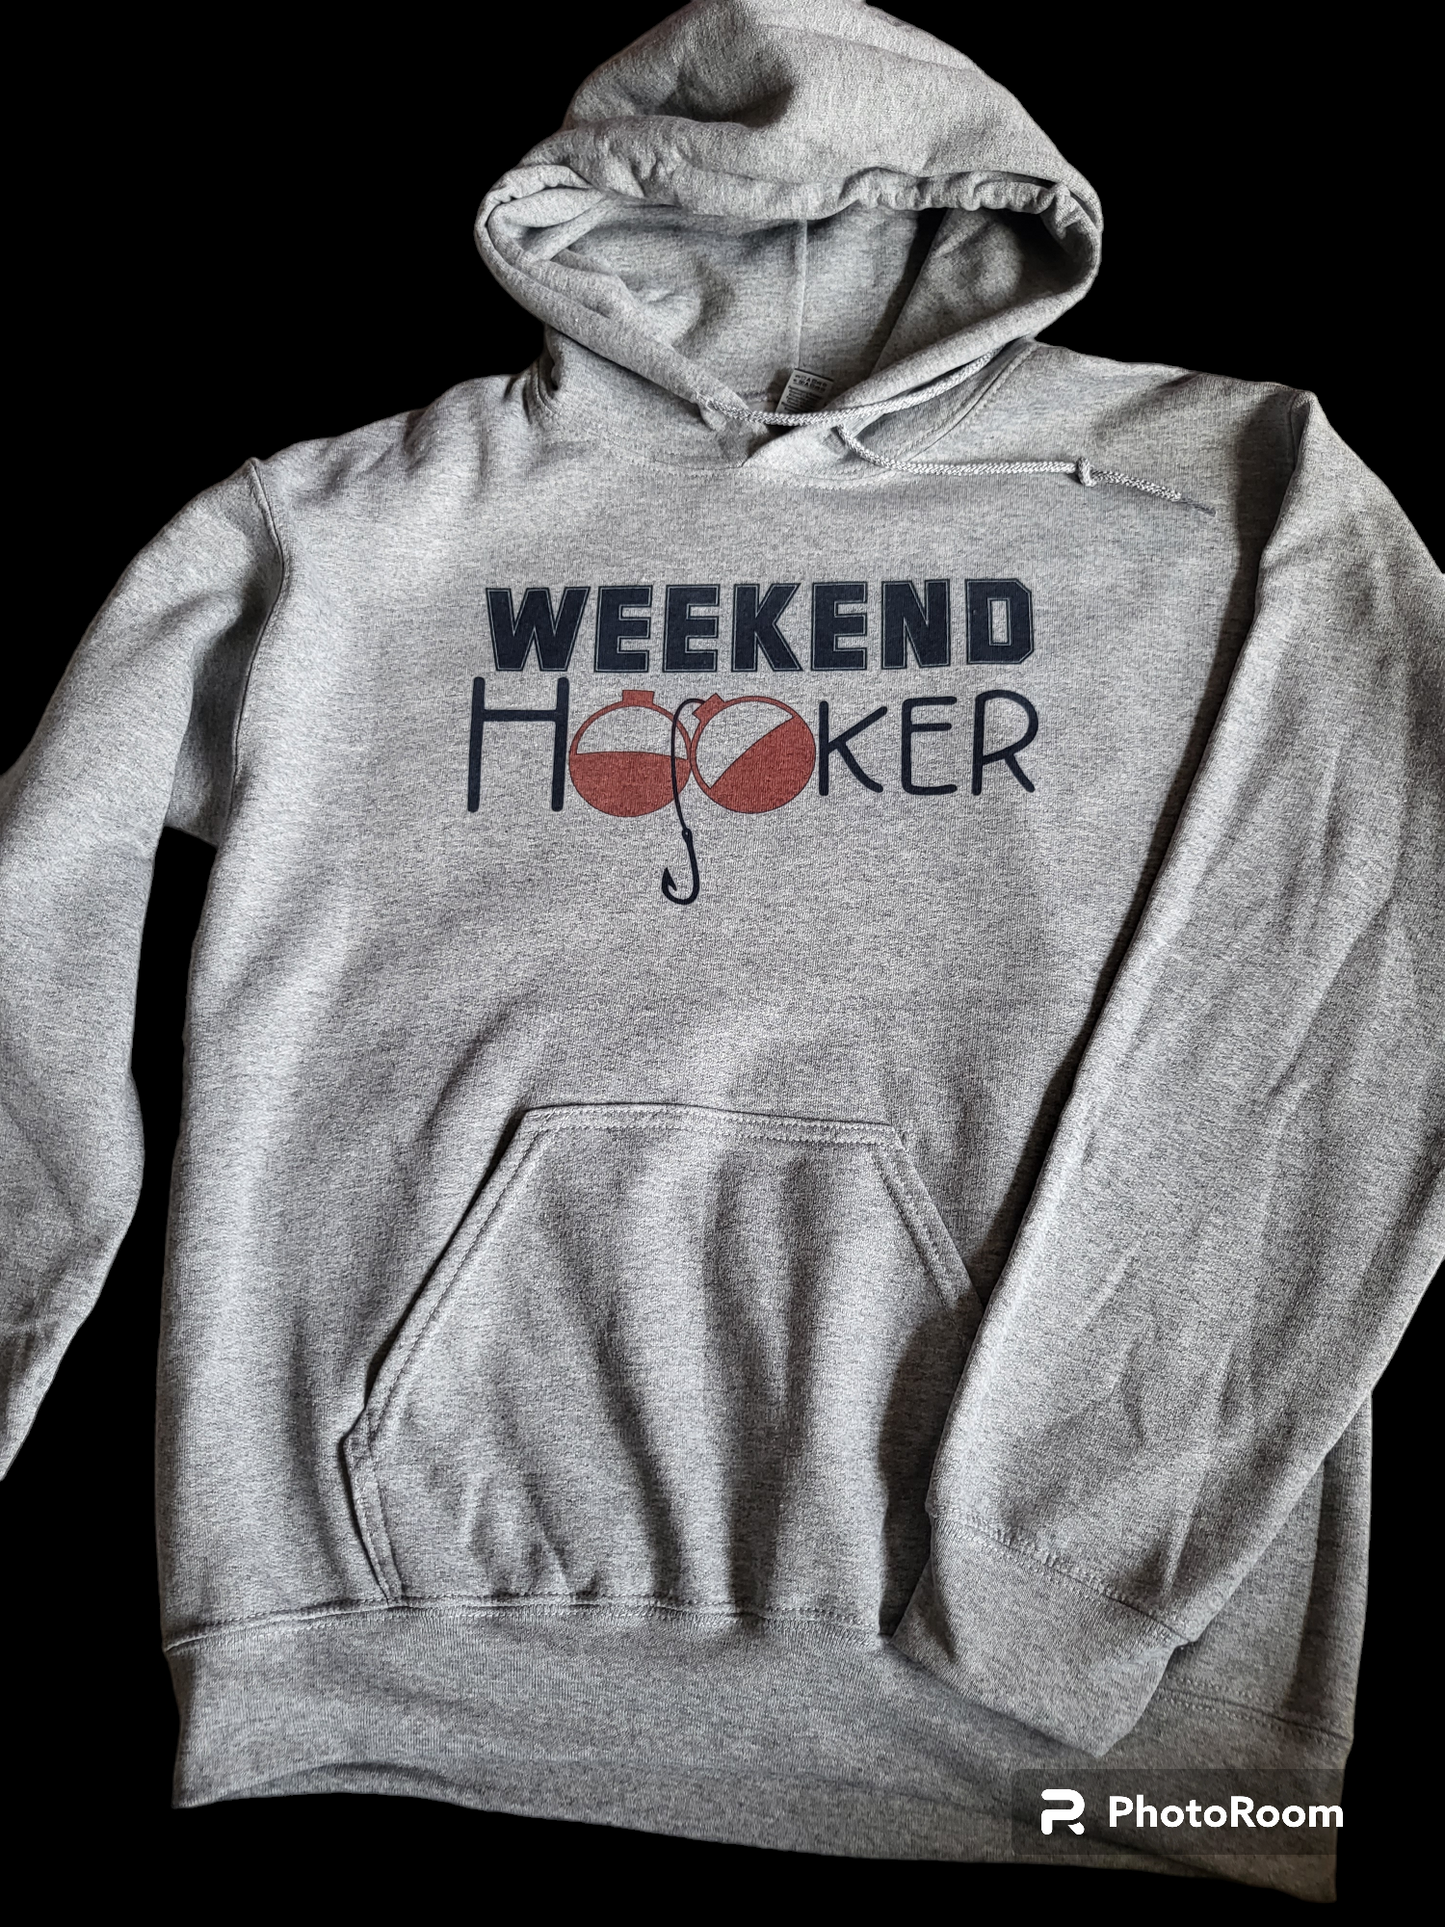 Weekend Hooker hoodies